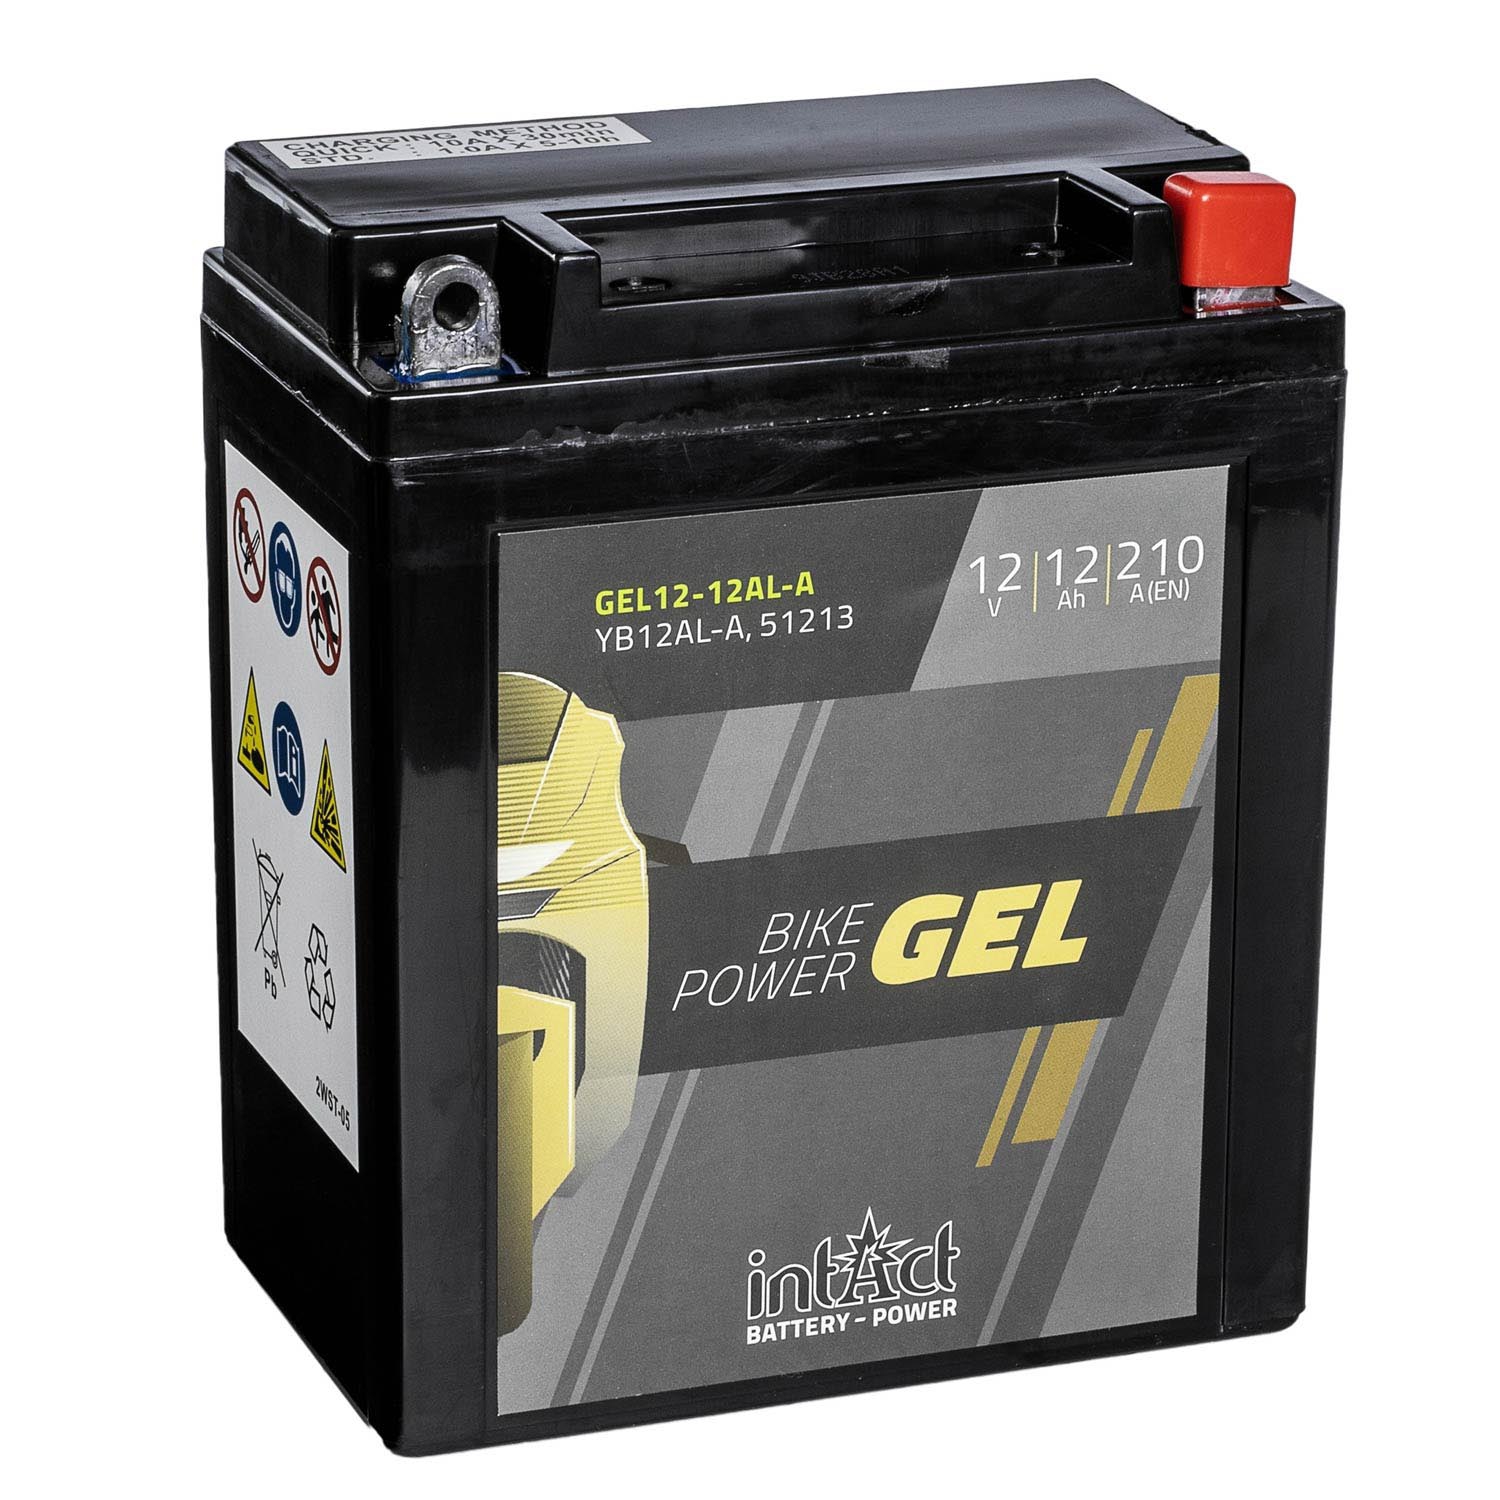 Intact GEL Batterie YB12AL-A 51213 Motorradbatterie GEL12-12AL-A